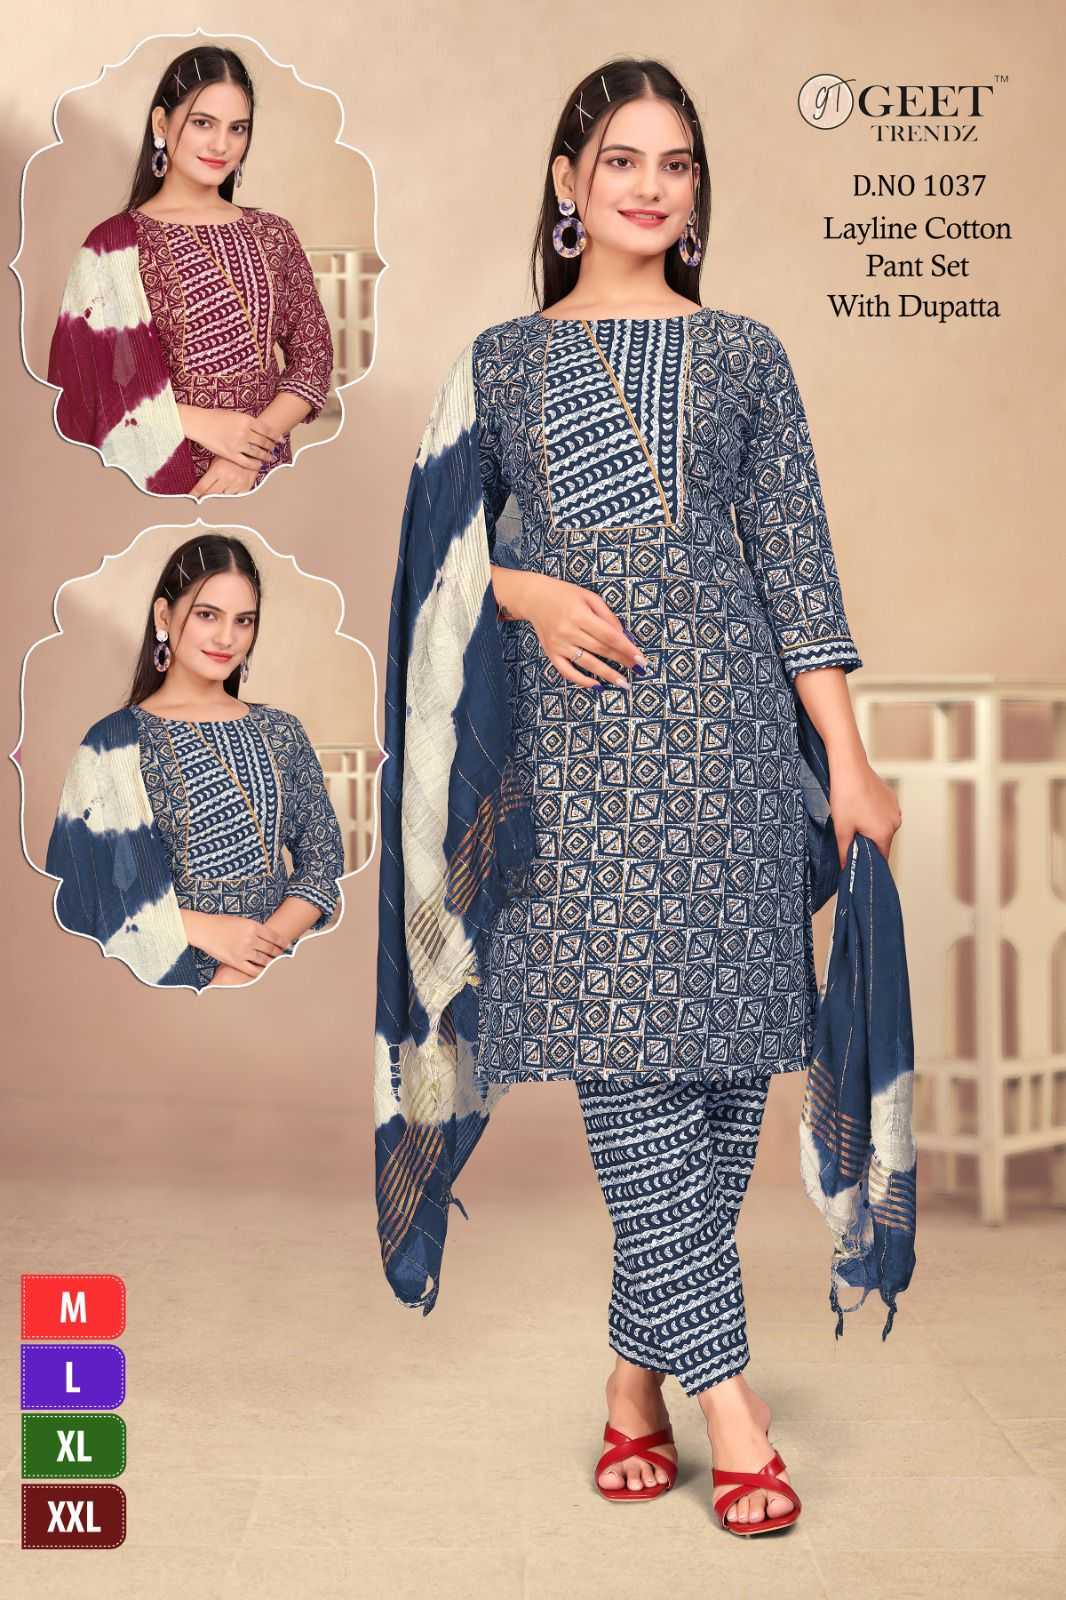 geet trendz full stitch comfortable layline cotton salwar kameez